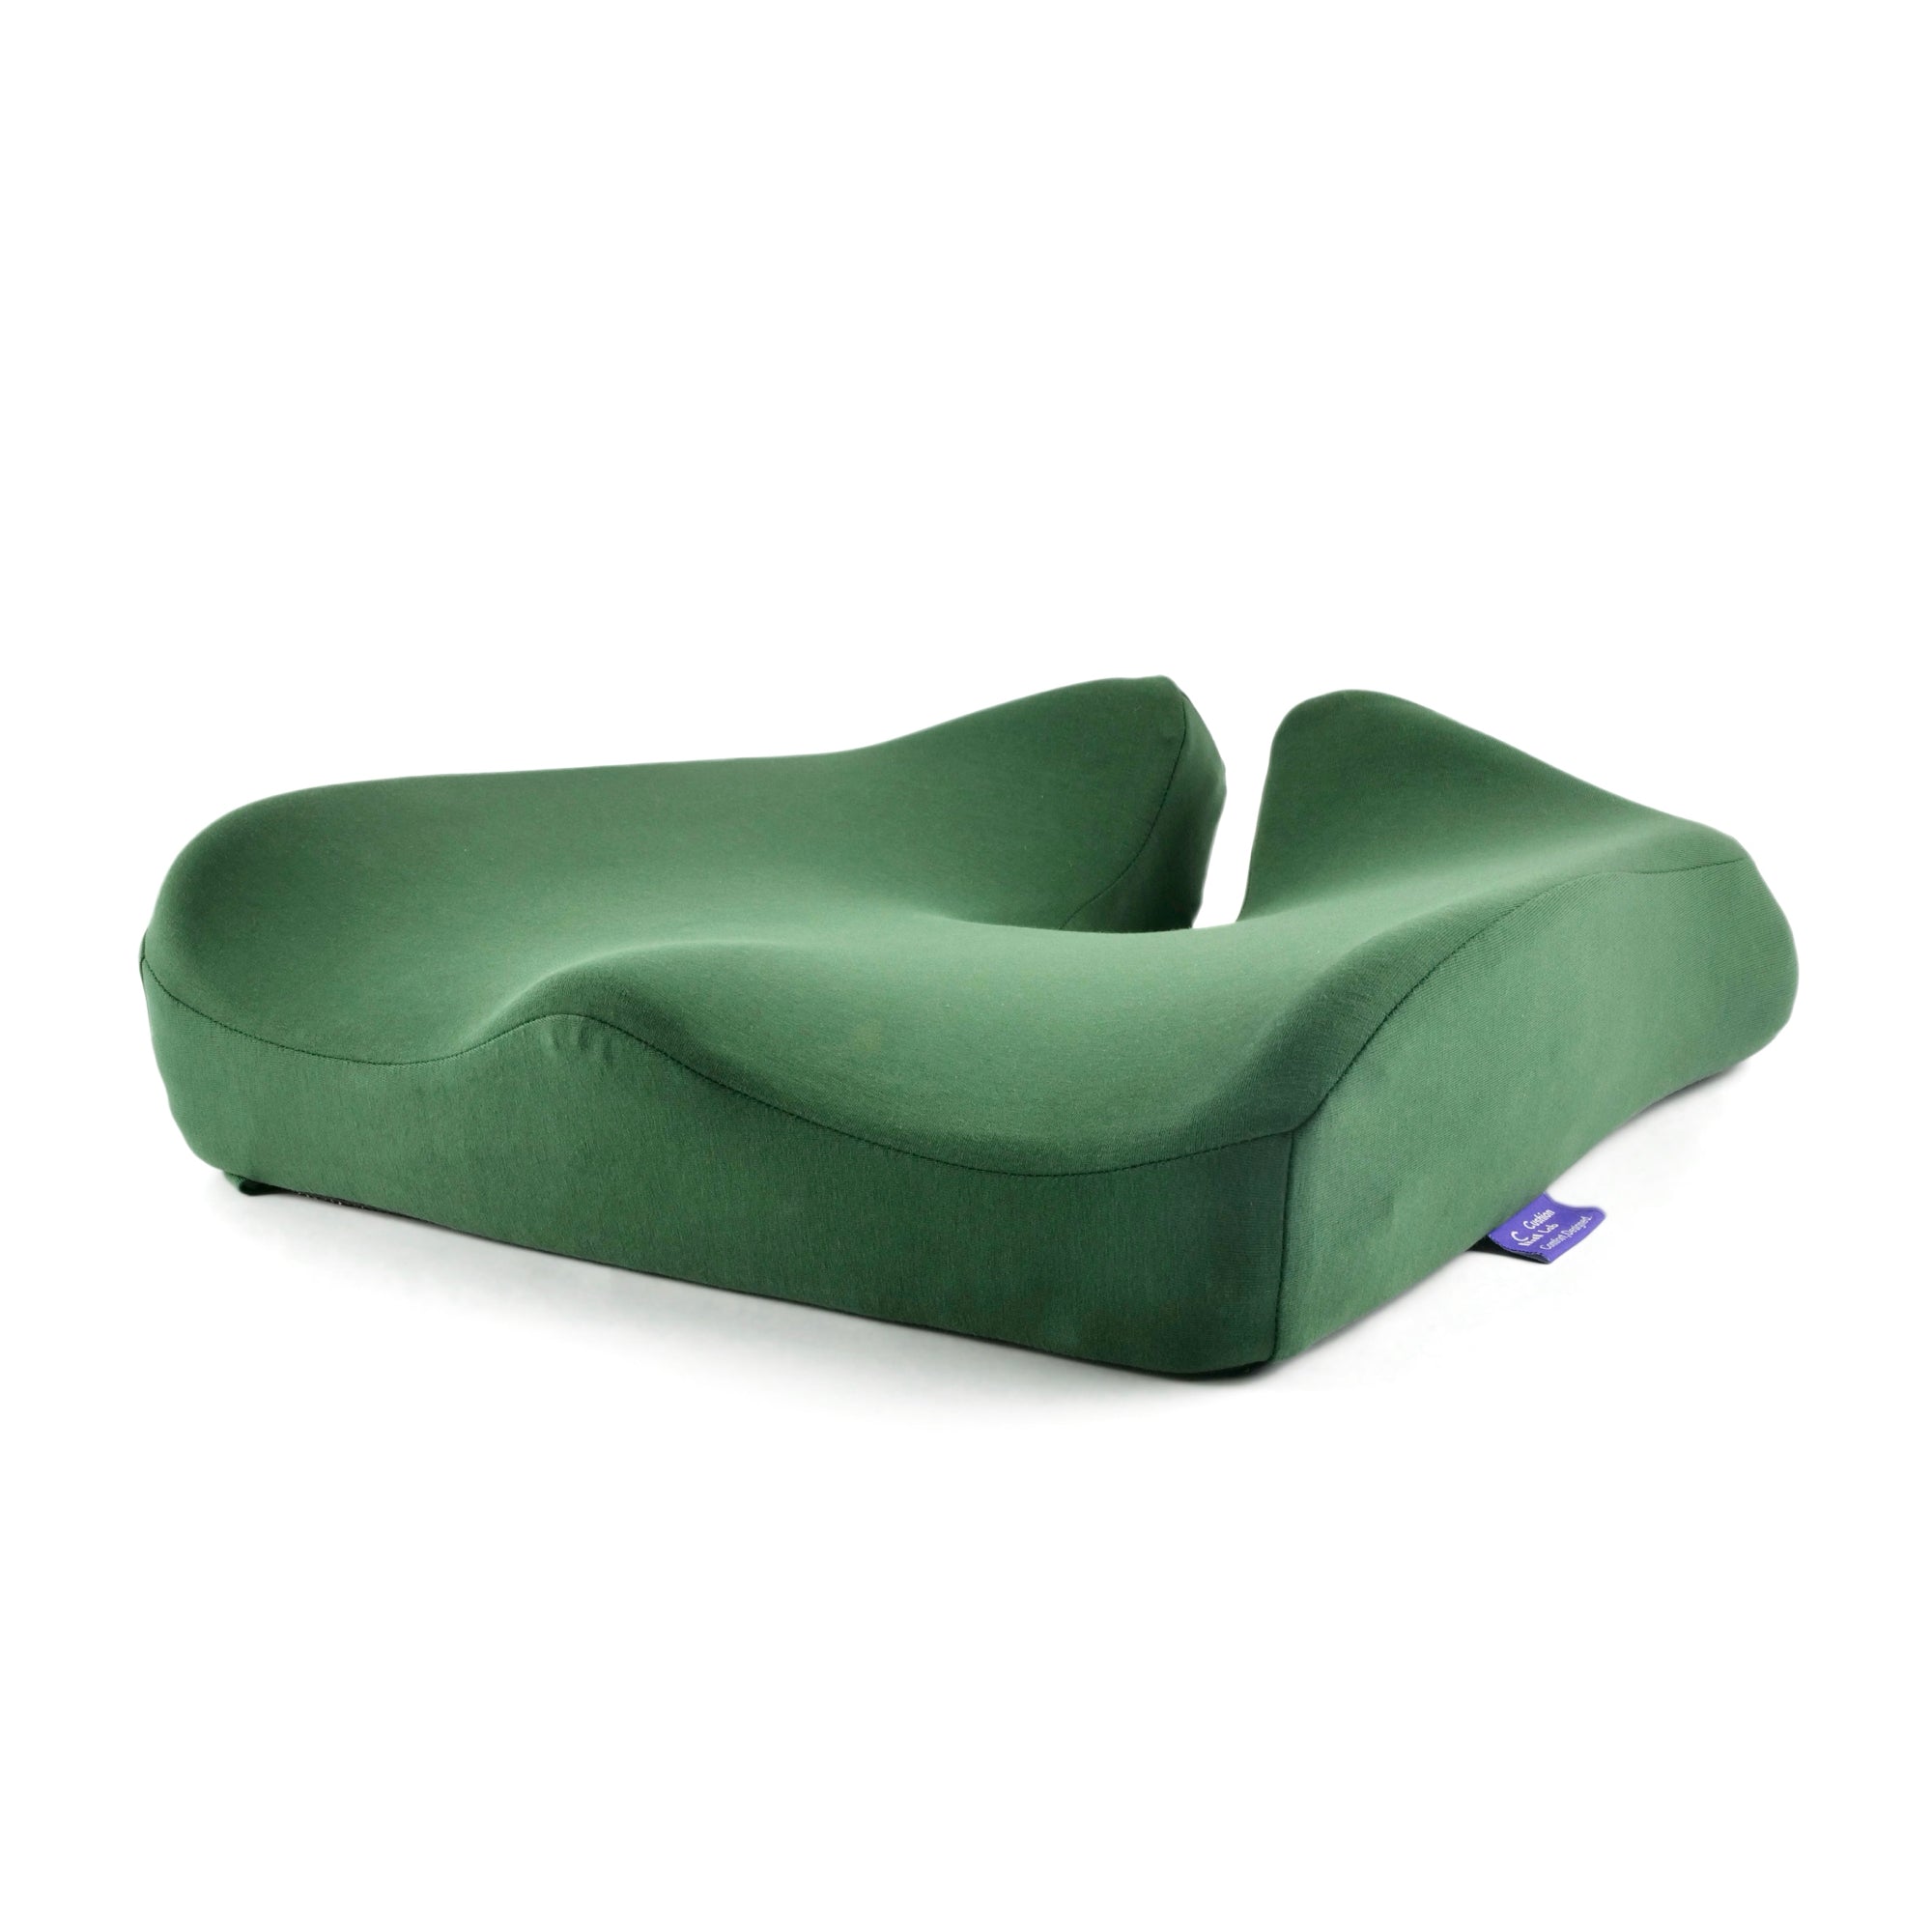 C Cushion Lab Green Unique Ergonomic Design Extra Dense Lumbar